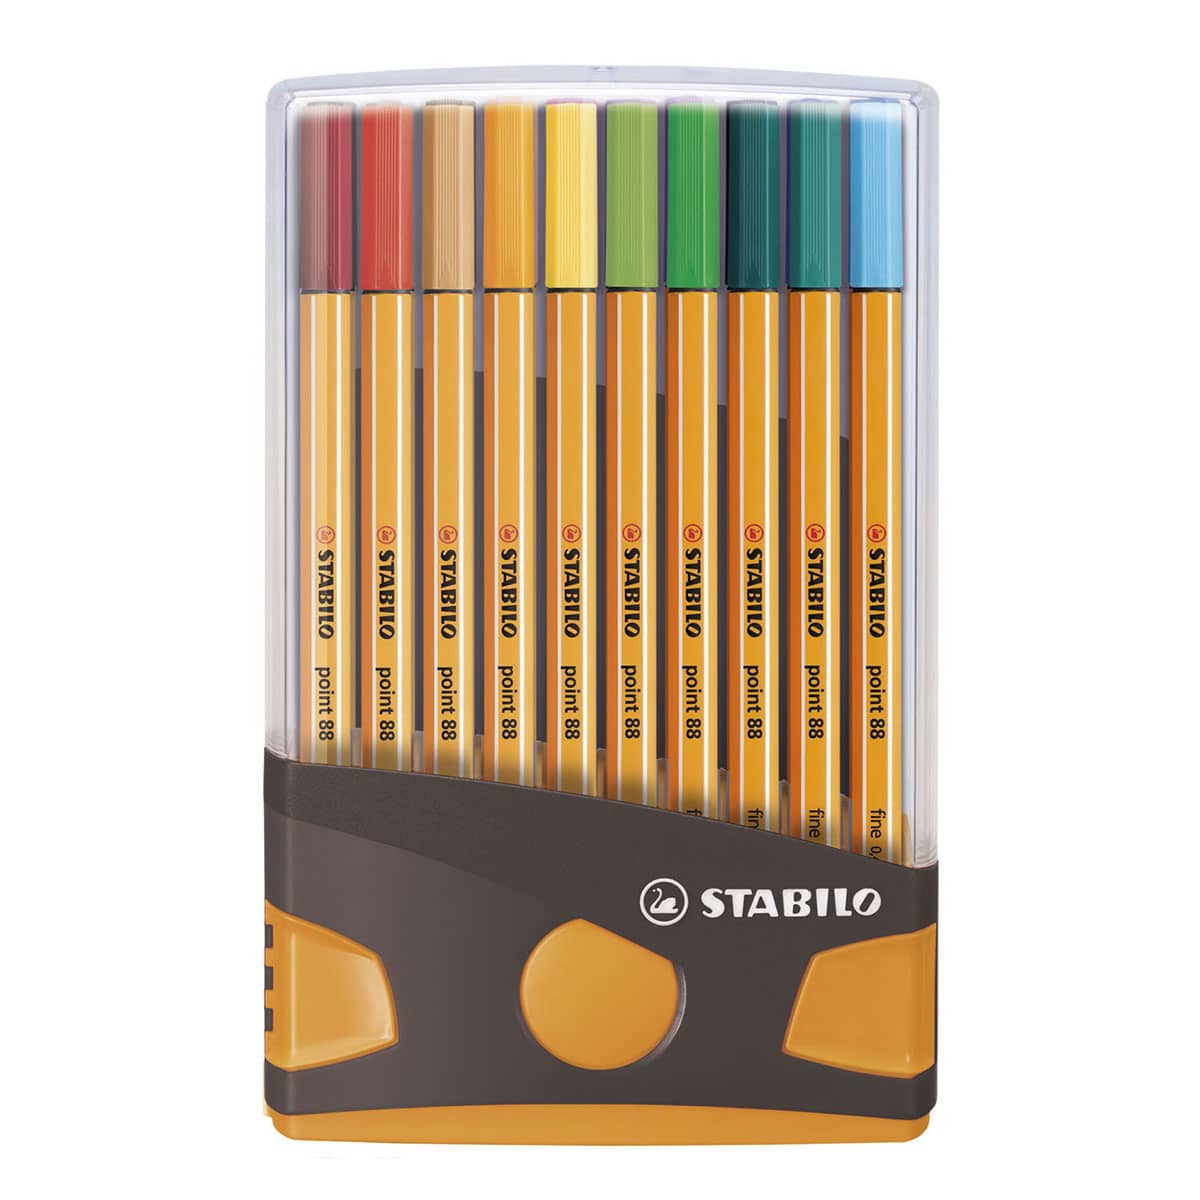 Koopje in het geheim studio STABILO fineliner point 88 ColorParade set van 20 - Suitup - Art Supplies